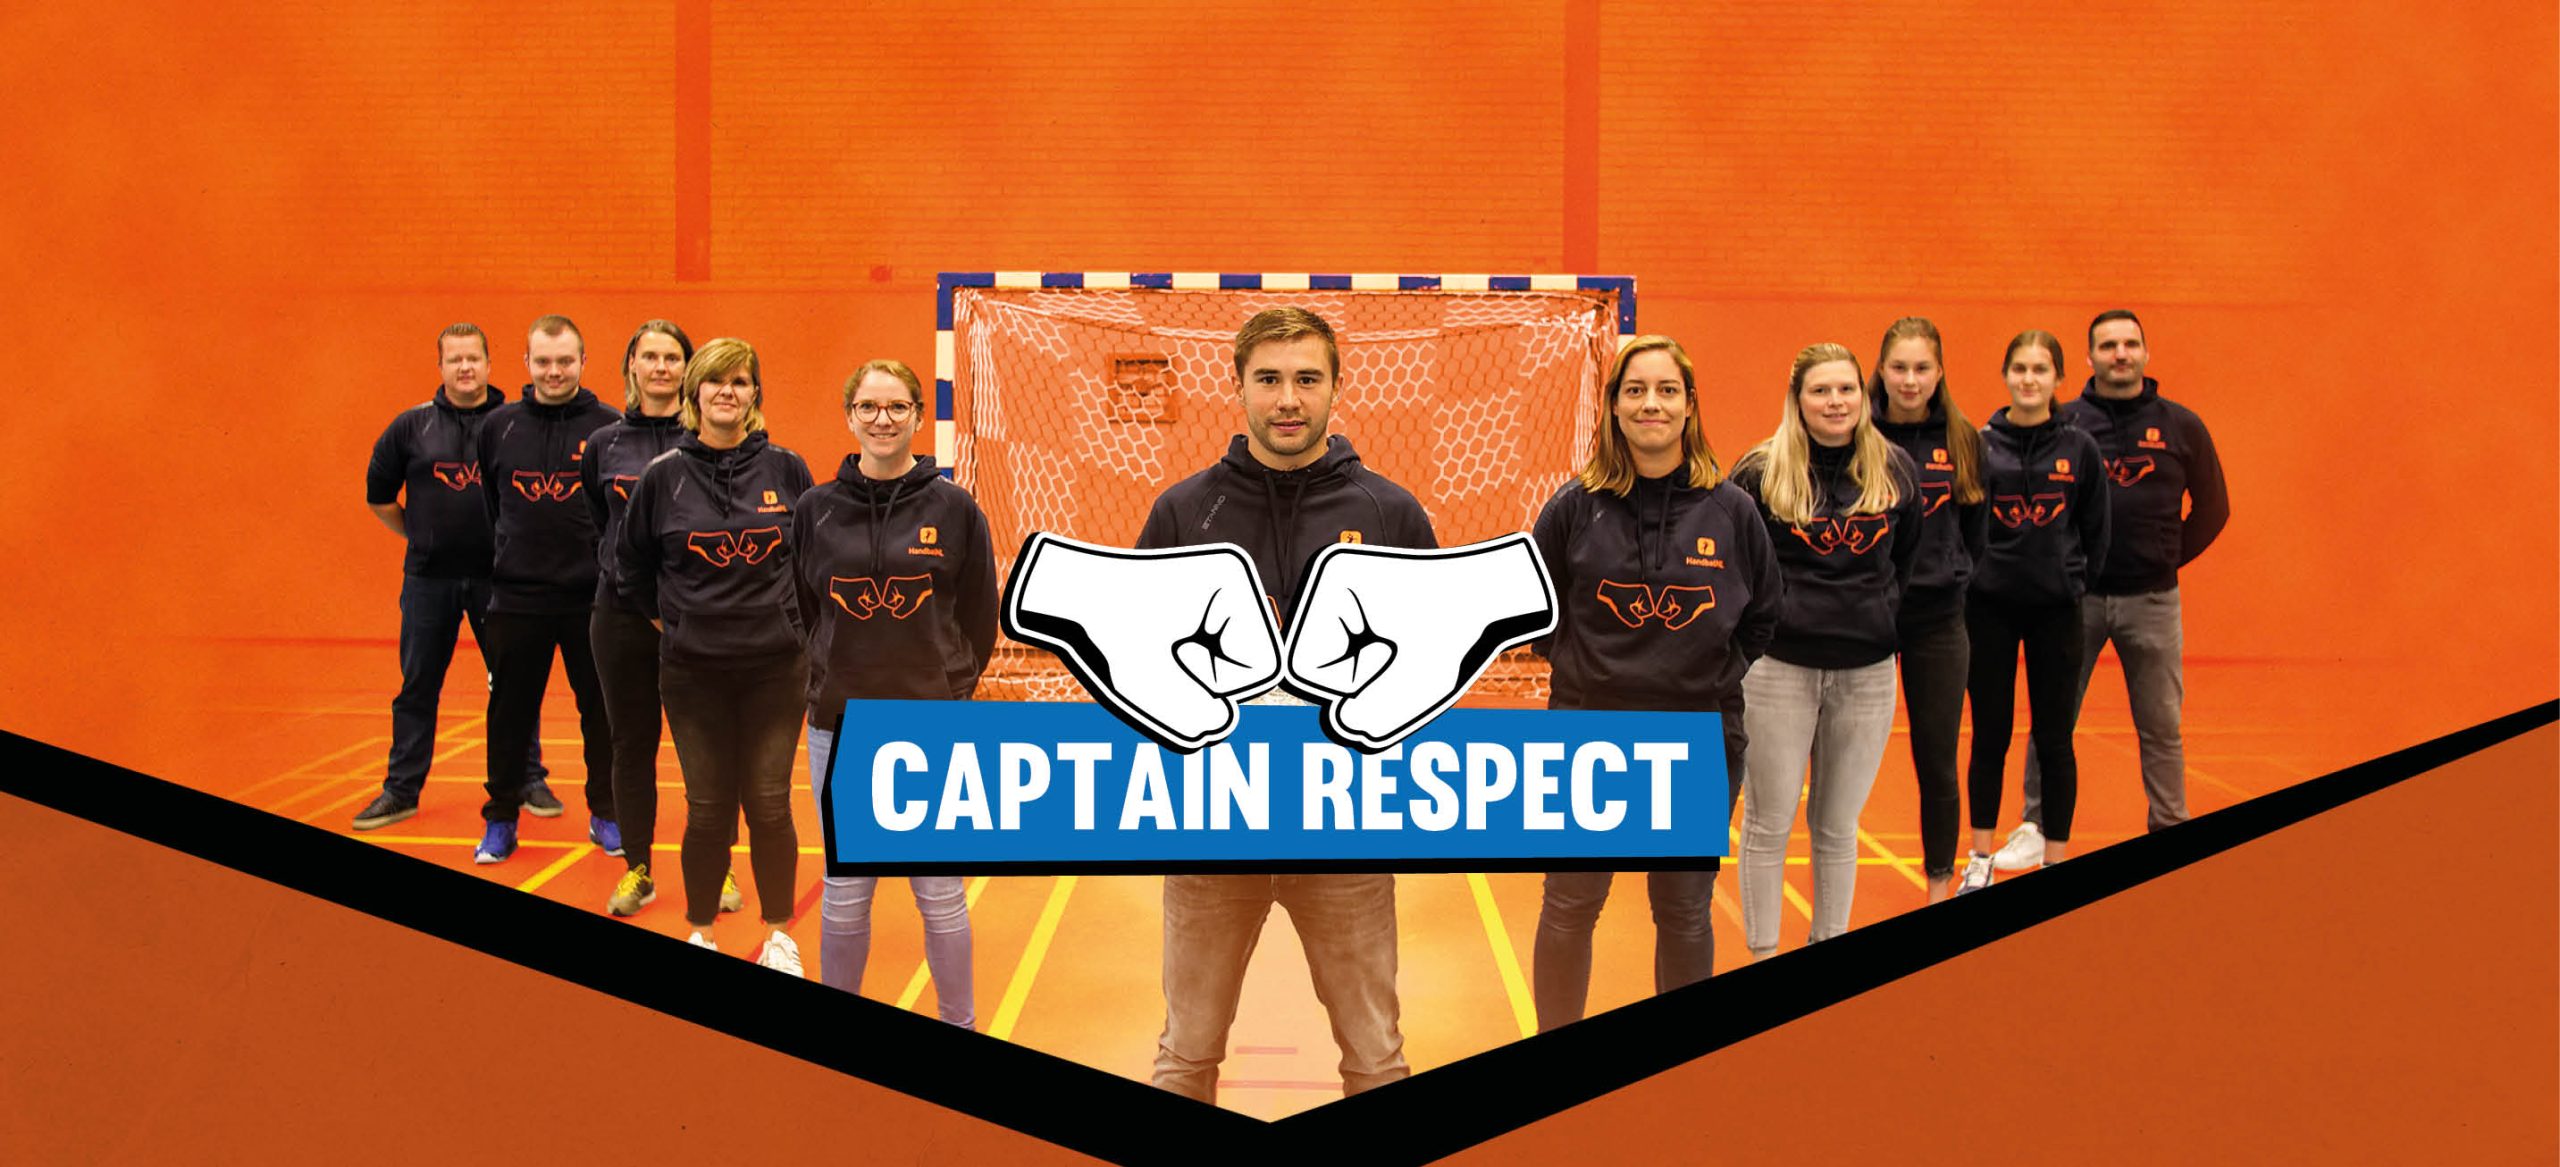 Handbal-international Luc Steins lanceert 'Captian Respect'!